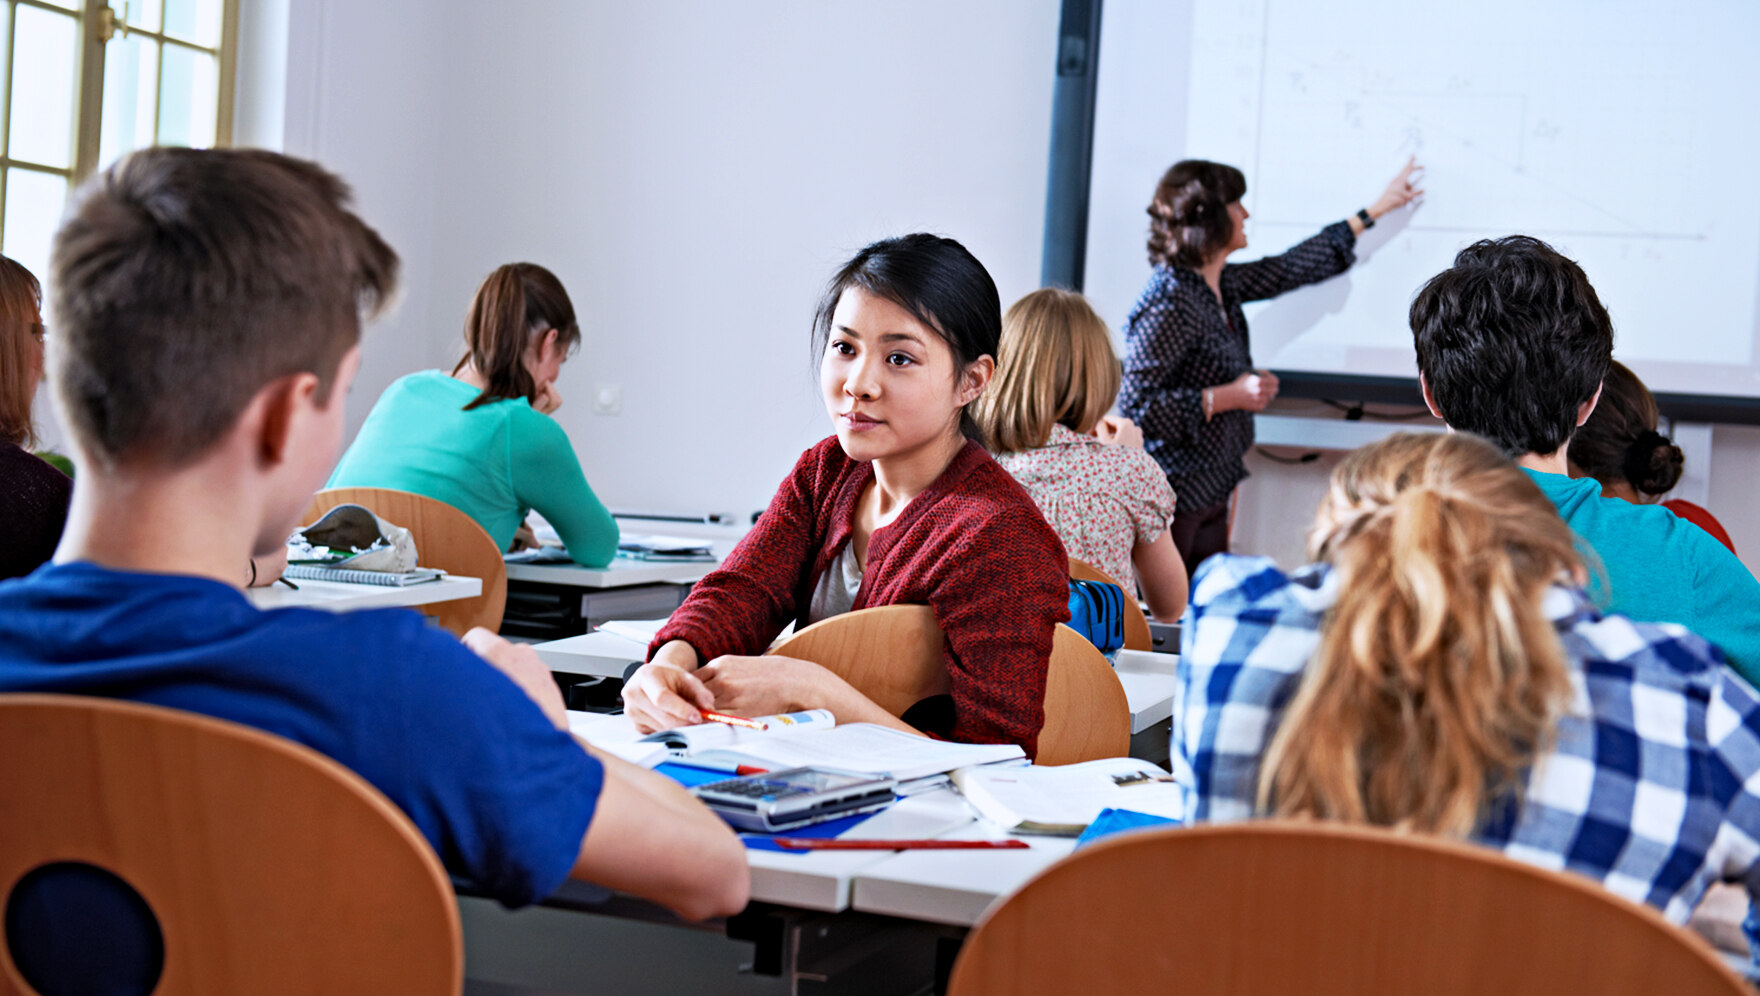 Szene aus einem Klassenzimmer: Die Lehrerin zeigt etwas am Projektor, ein Mädchen dreht sich zu ihren Klassenkameraden nach hinten um.